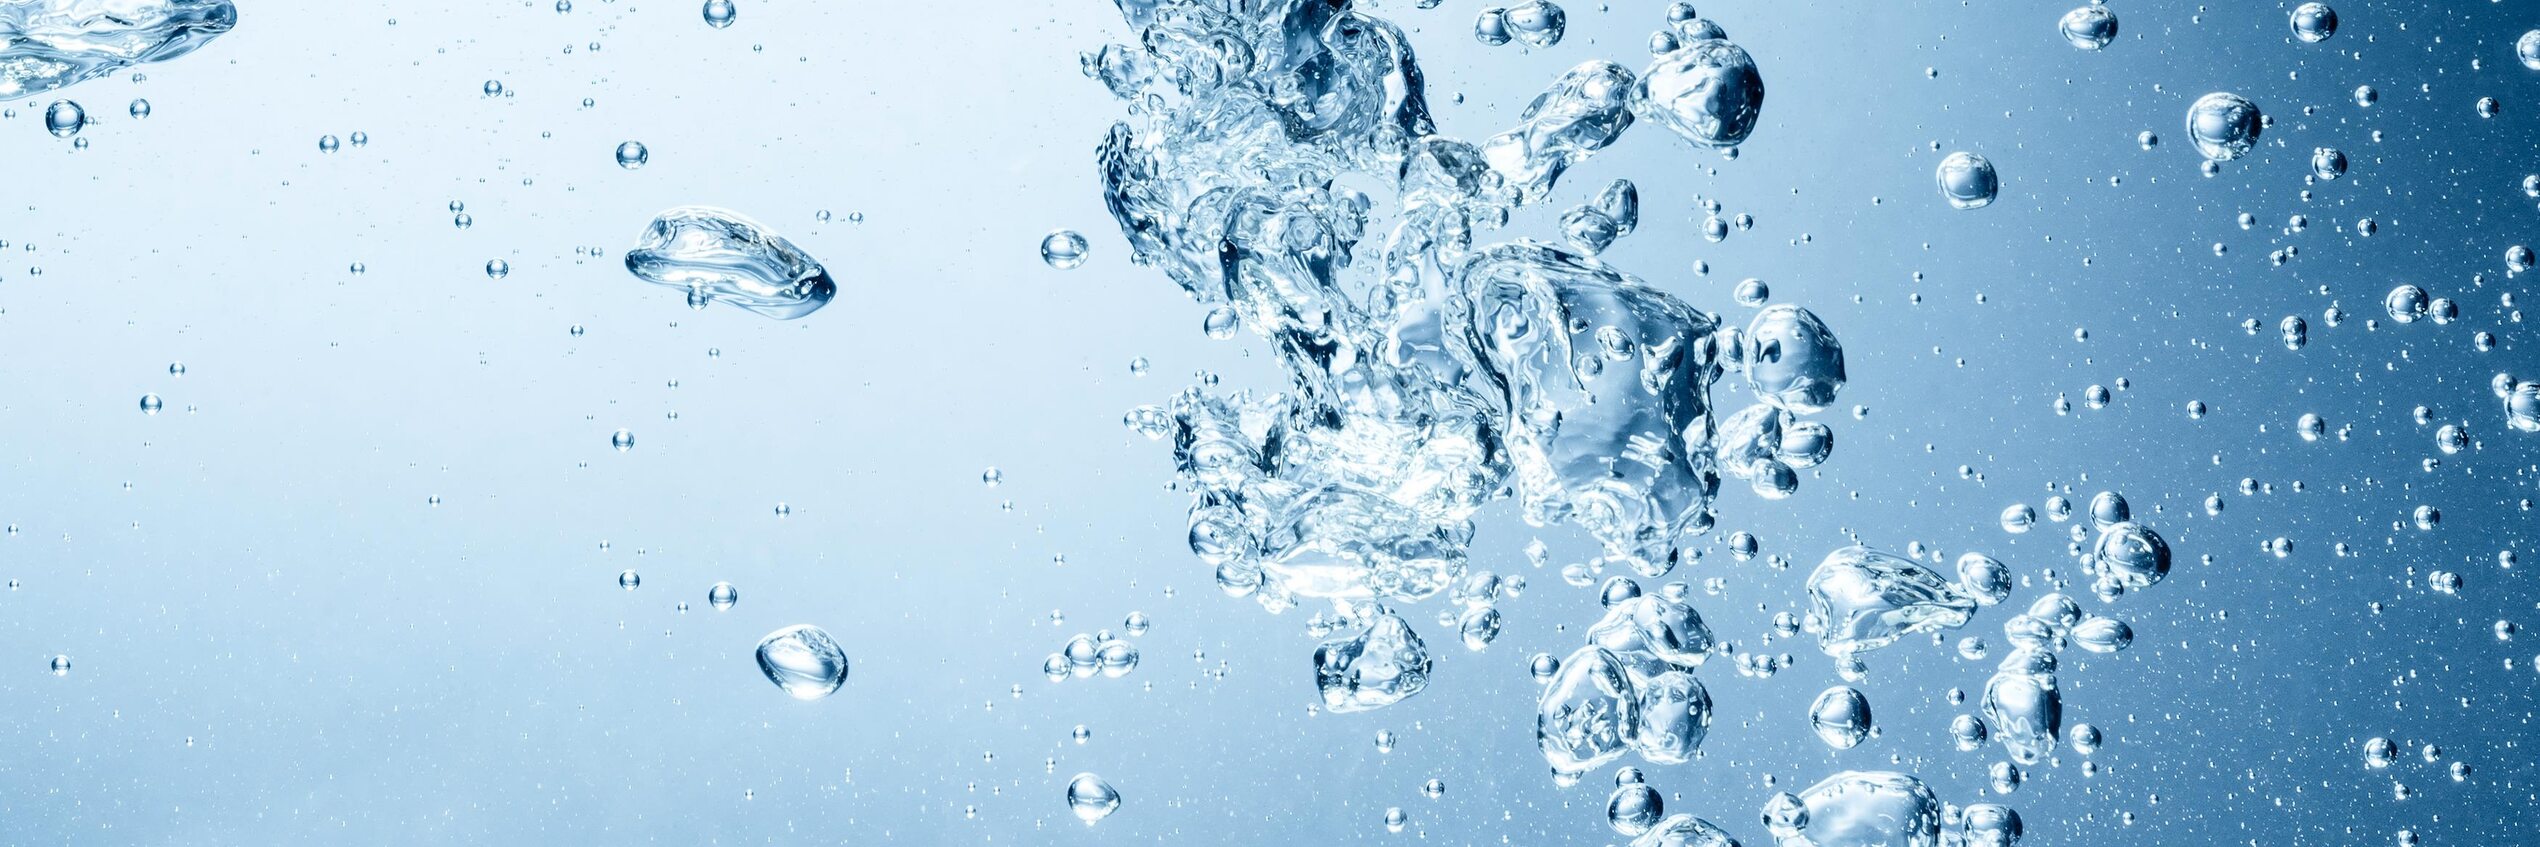 Sauberes Wasser dank Elektroniksystemen von Diehl Controls